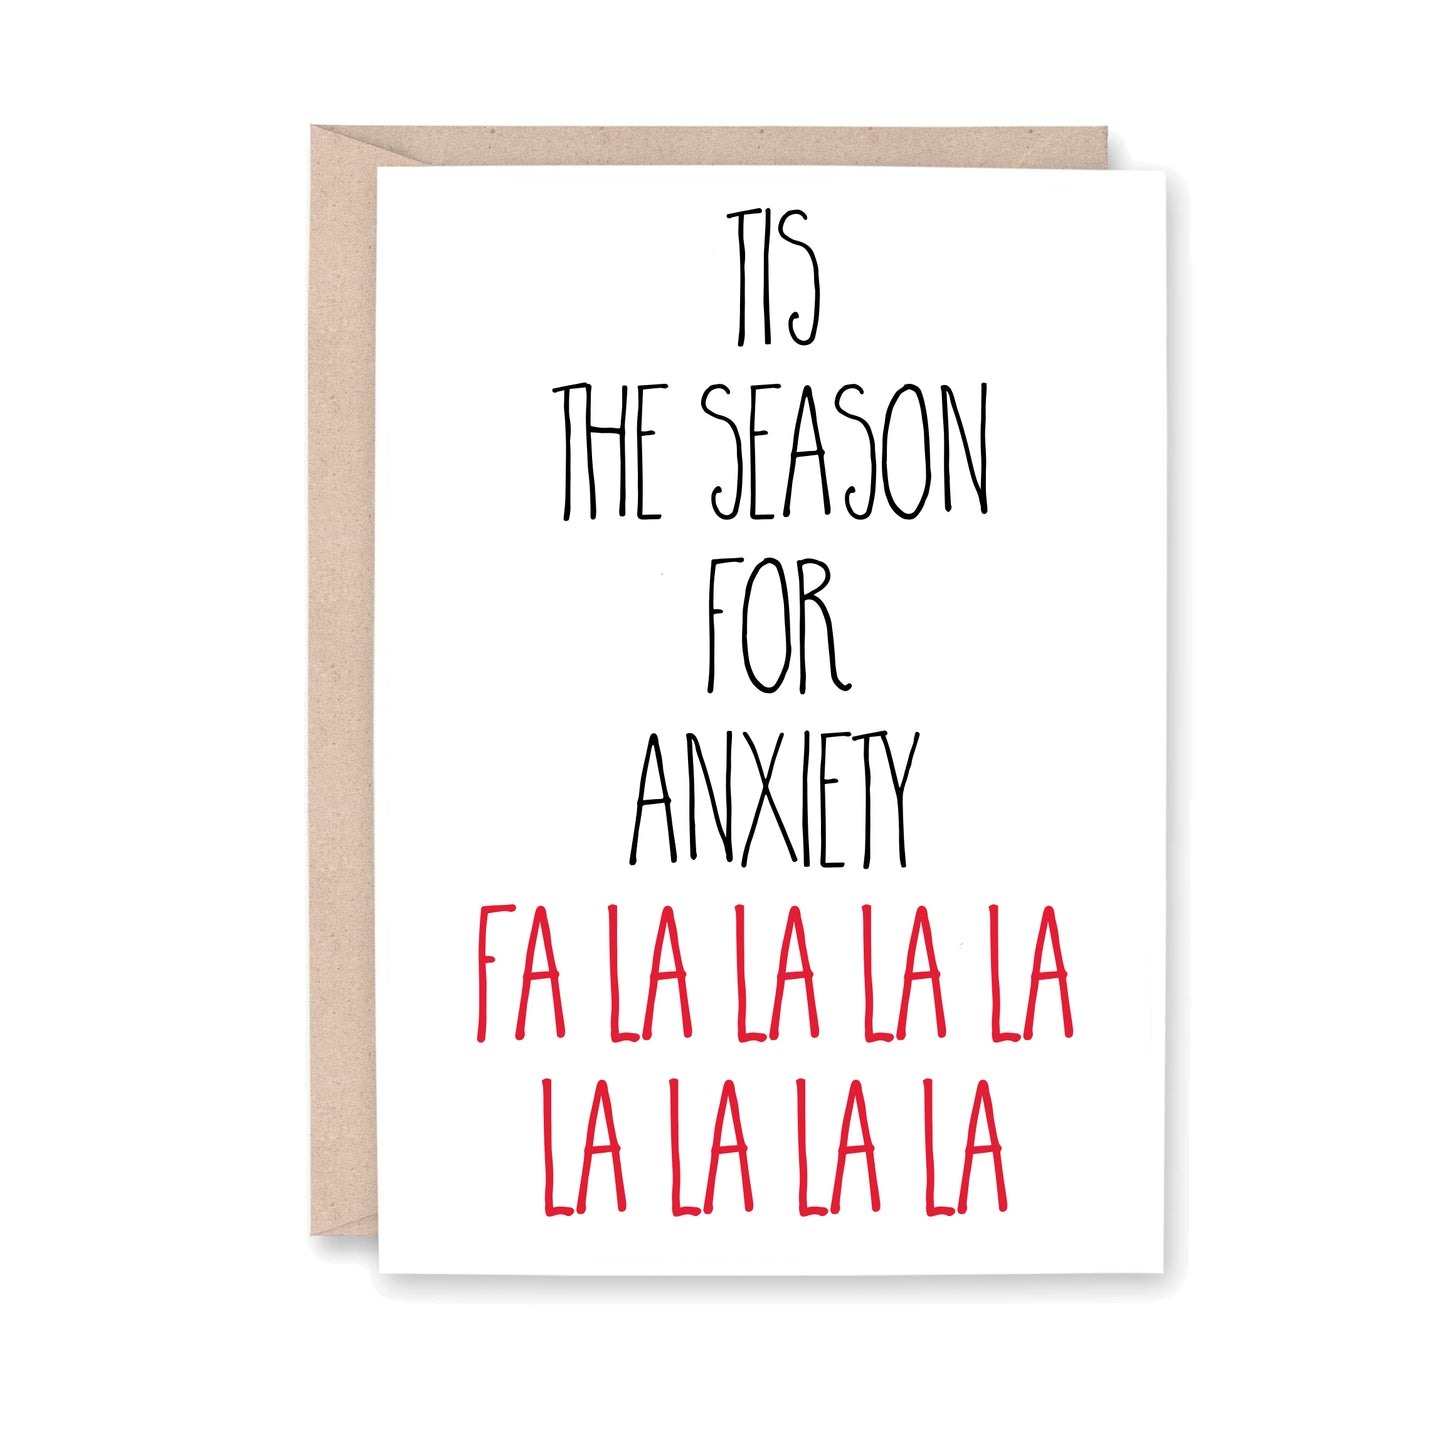 Tis the season for anxiety fa la la la la la la la la